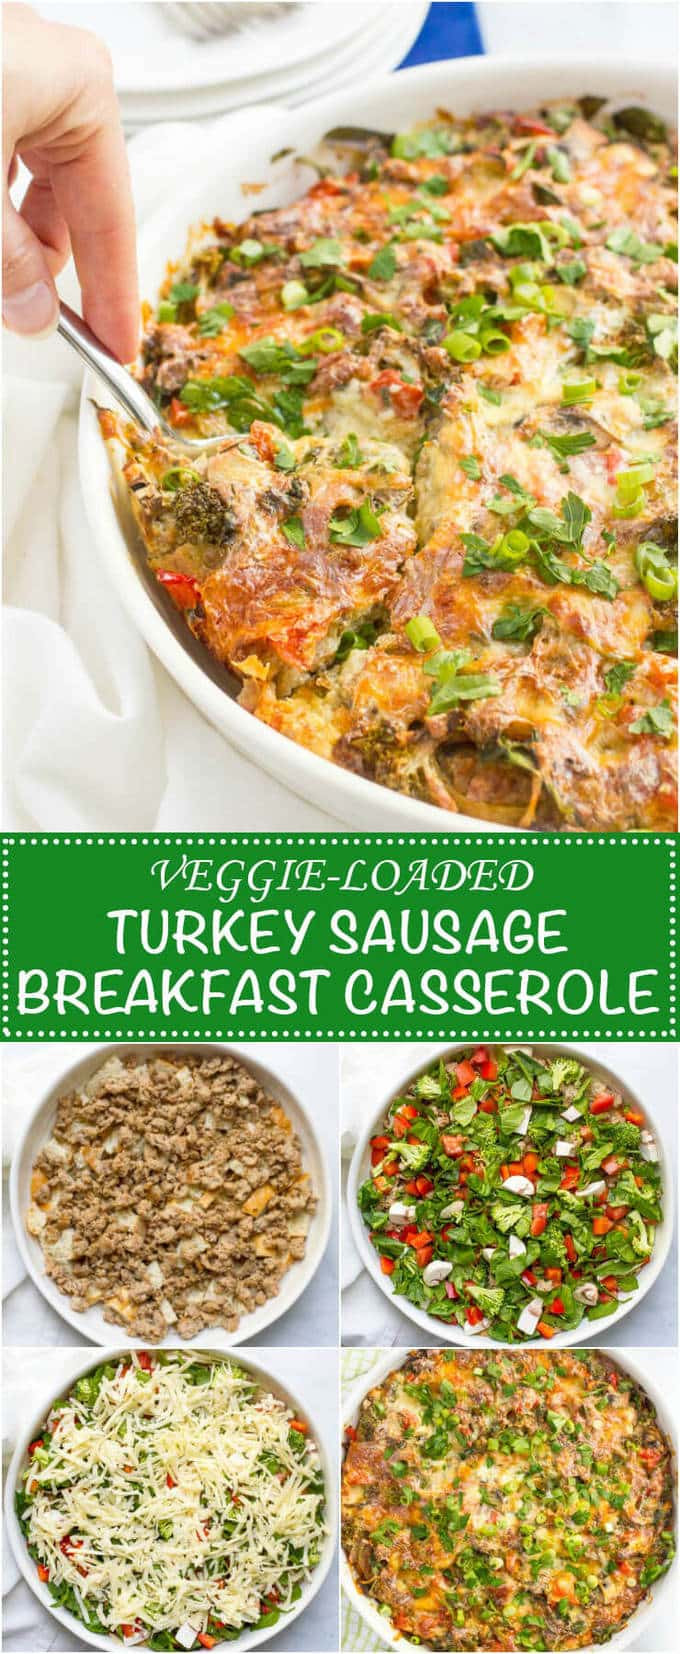 Make Ahead Breakfast Casserole Healthy
 Make ahead healthy sausage breakfast casserole Family